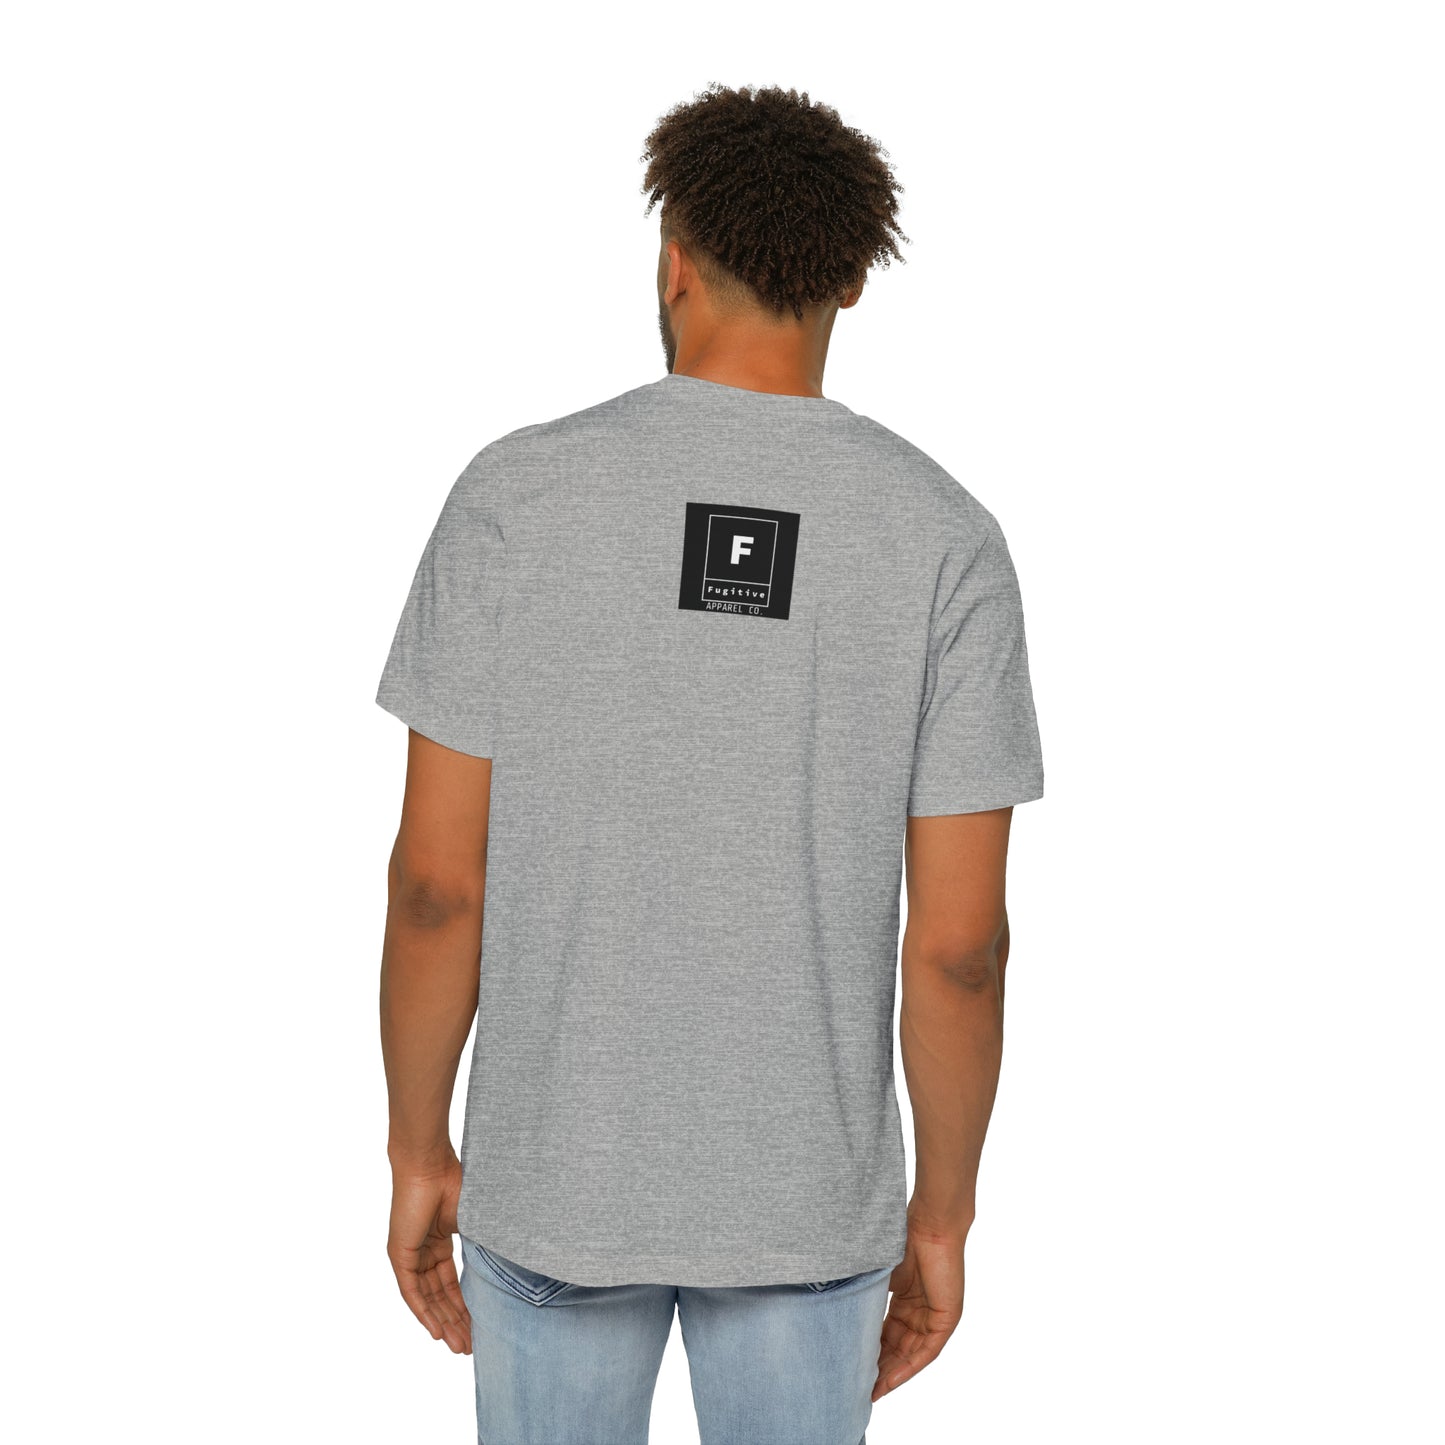 USA-Made Unisex Short-Sleeve Jersey T-Shirt